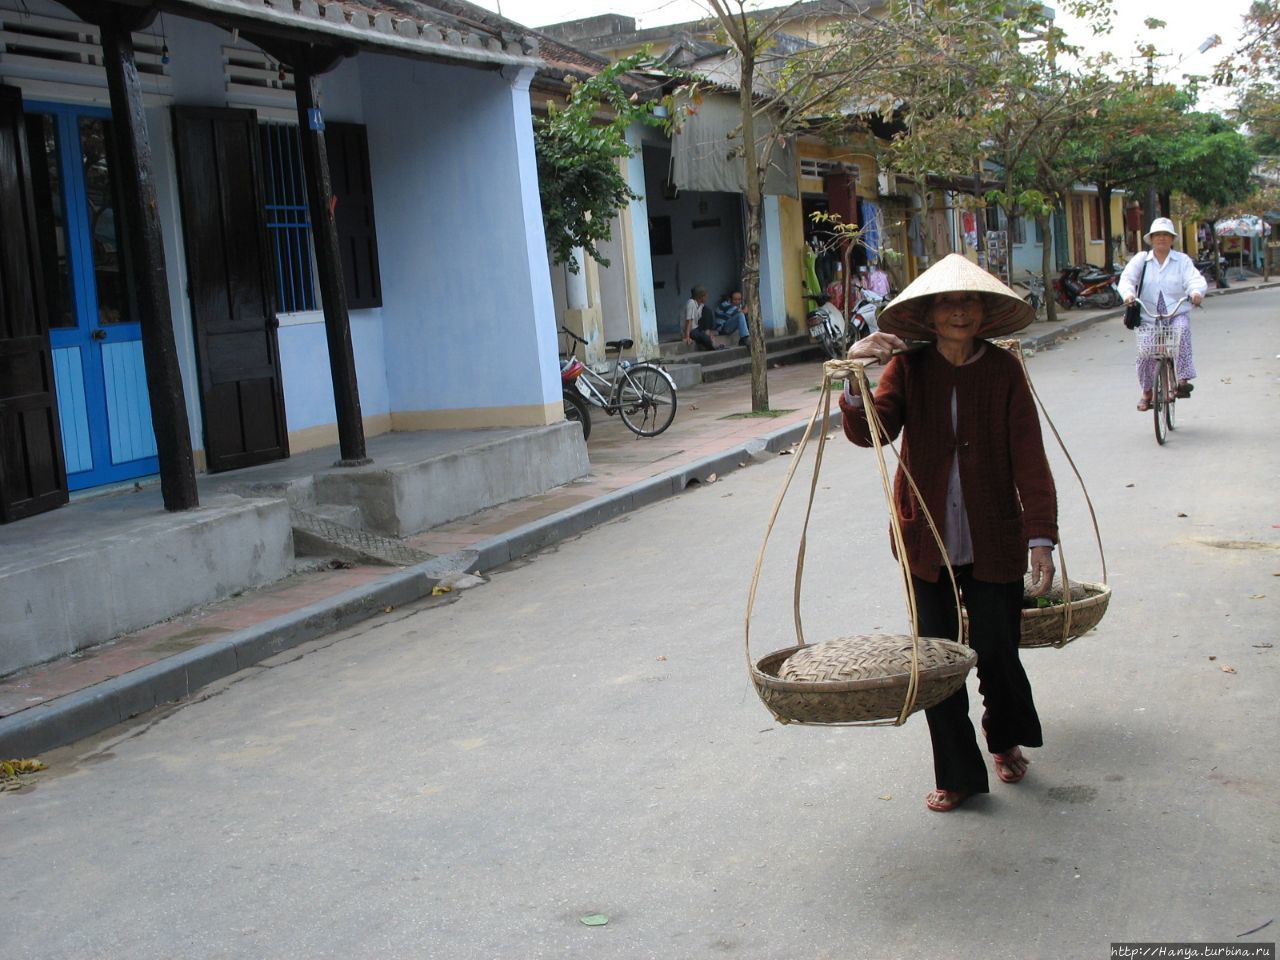 Хойан. Старая вьетнамка с   коромыслом и корзинами Хойан, Вьетнам